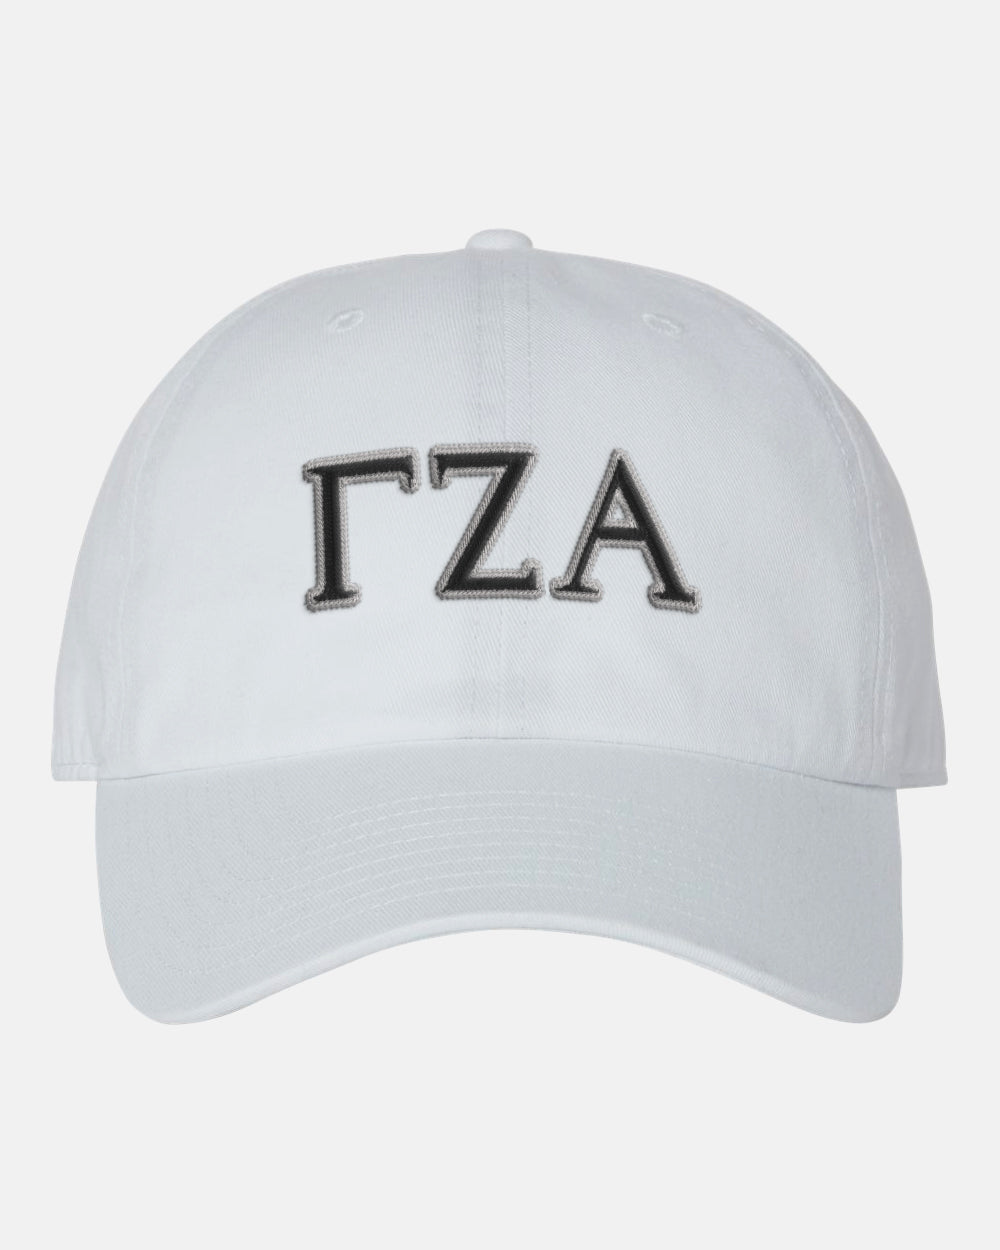 Gamma Zeta Alpha Embroidered '47 Brand Dad Hat